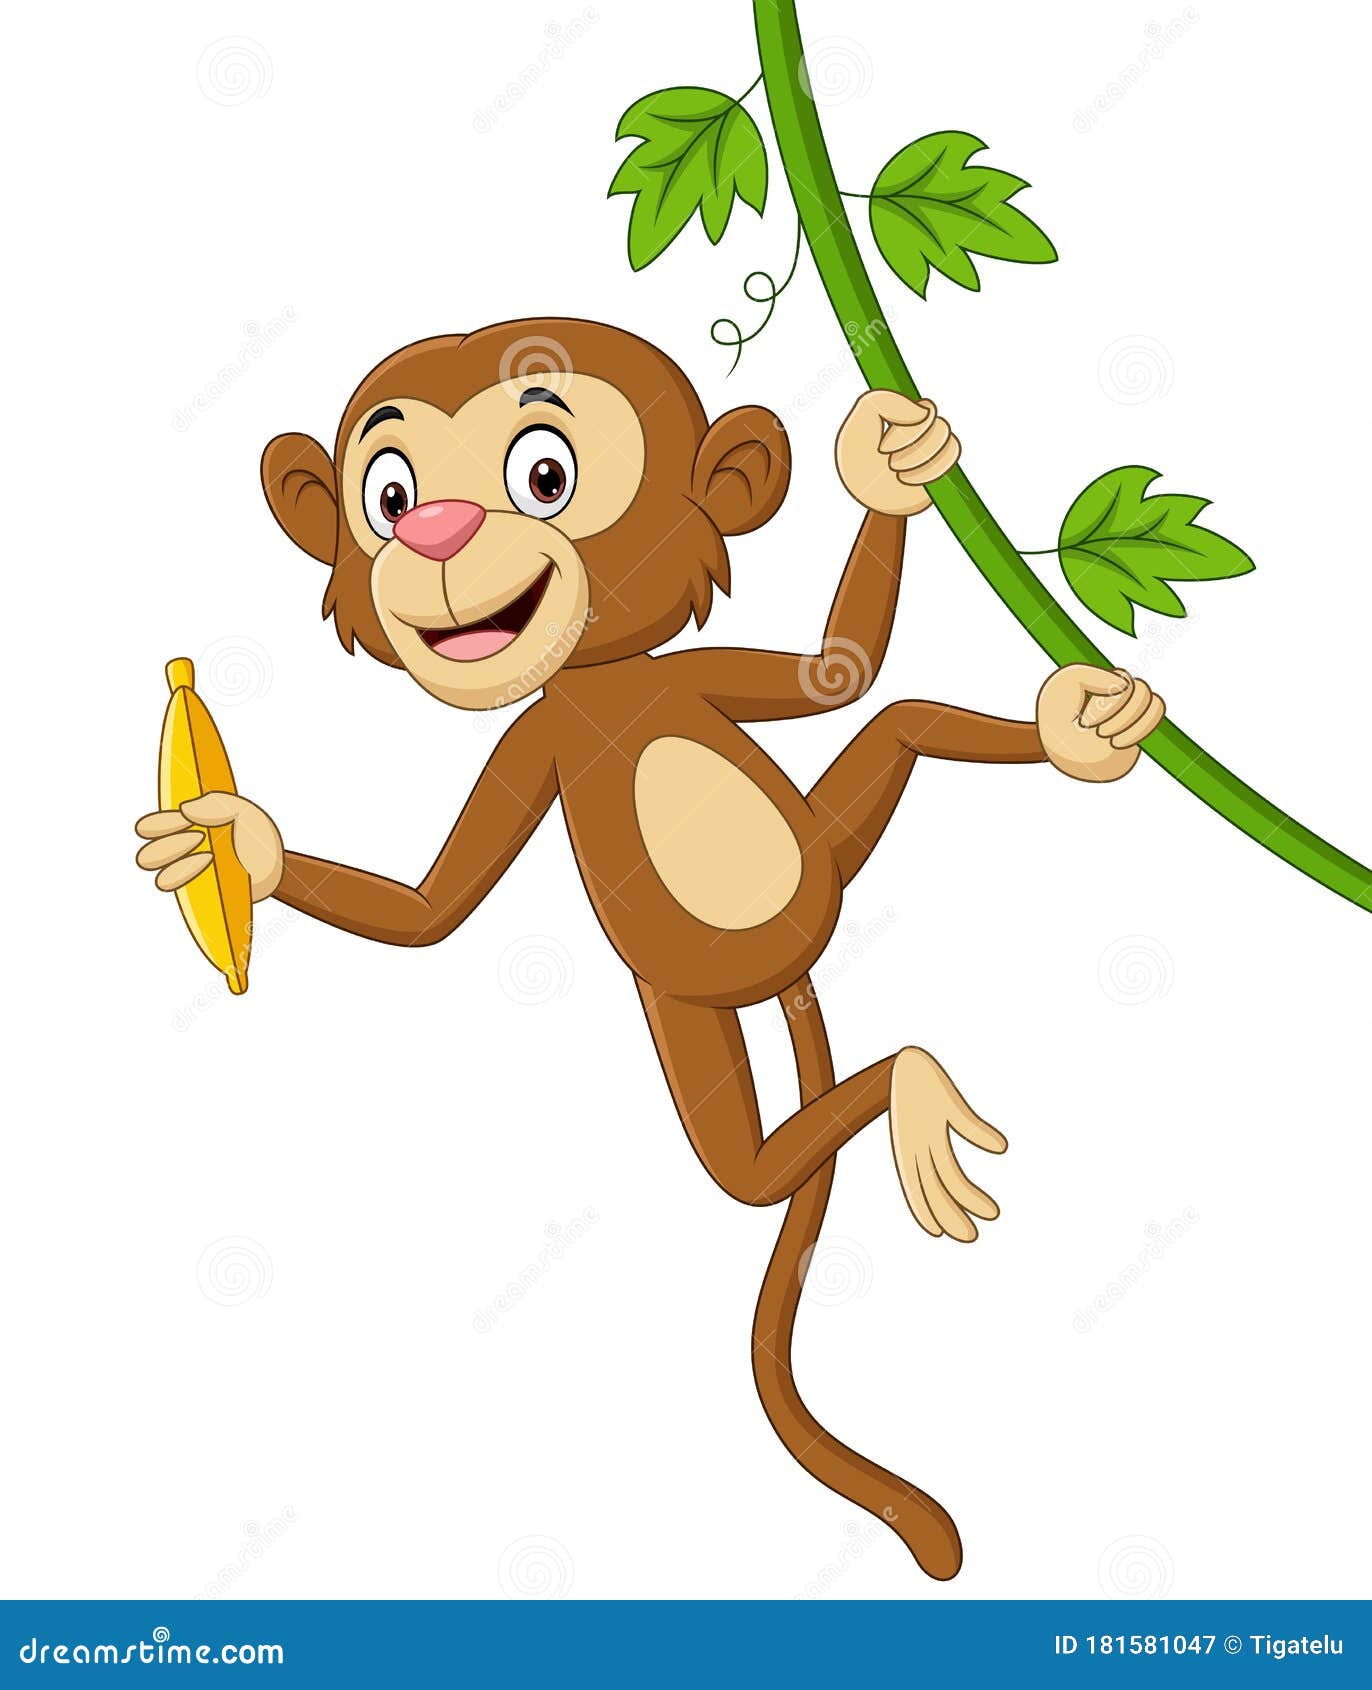 desenho de macaco comendo banana ilustração 3545292 Vetor no Vecteezy